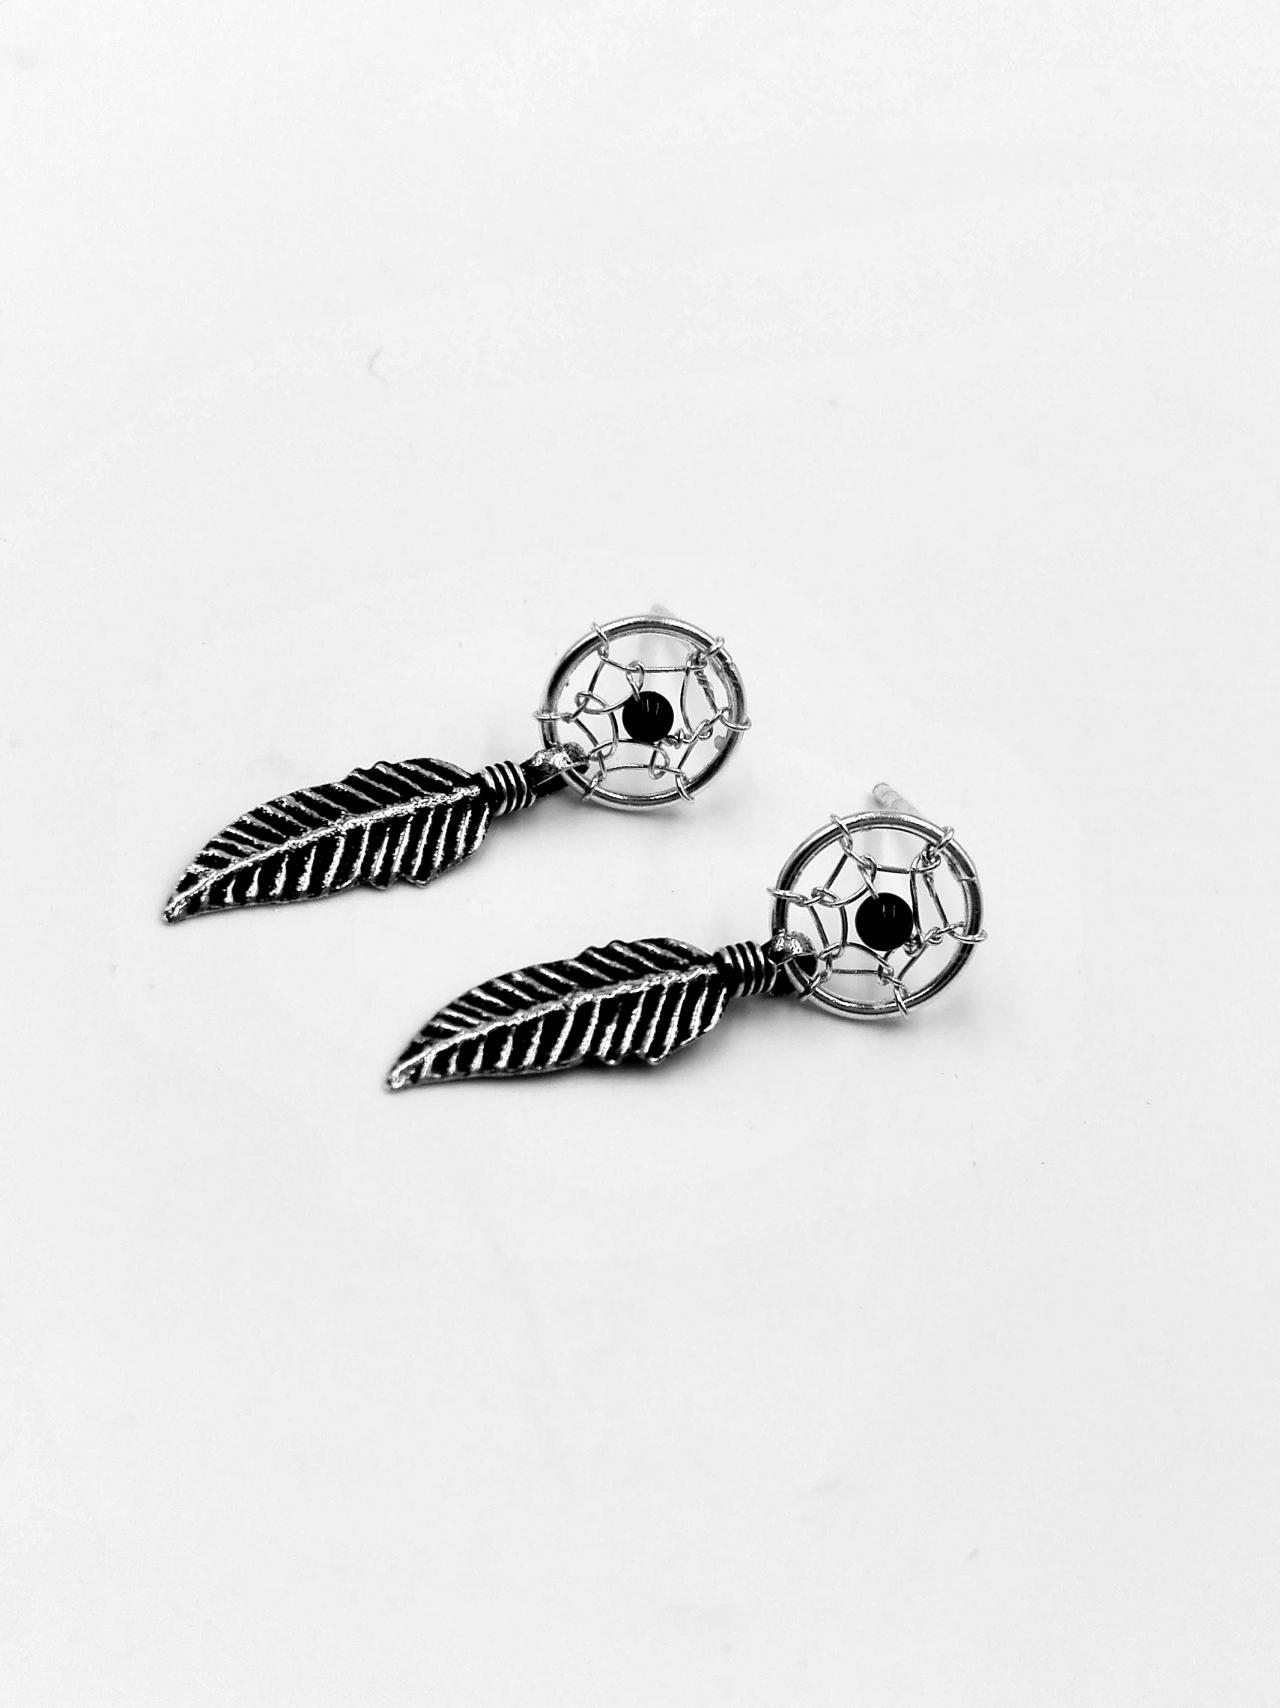 Dream Catcher Earrings, Sterling Silver Earrings Dangle, Feather Earrings Leaf, Pearl Earrings, Native American Earrings, Silver Earrings